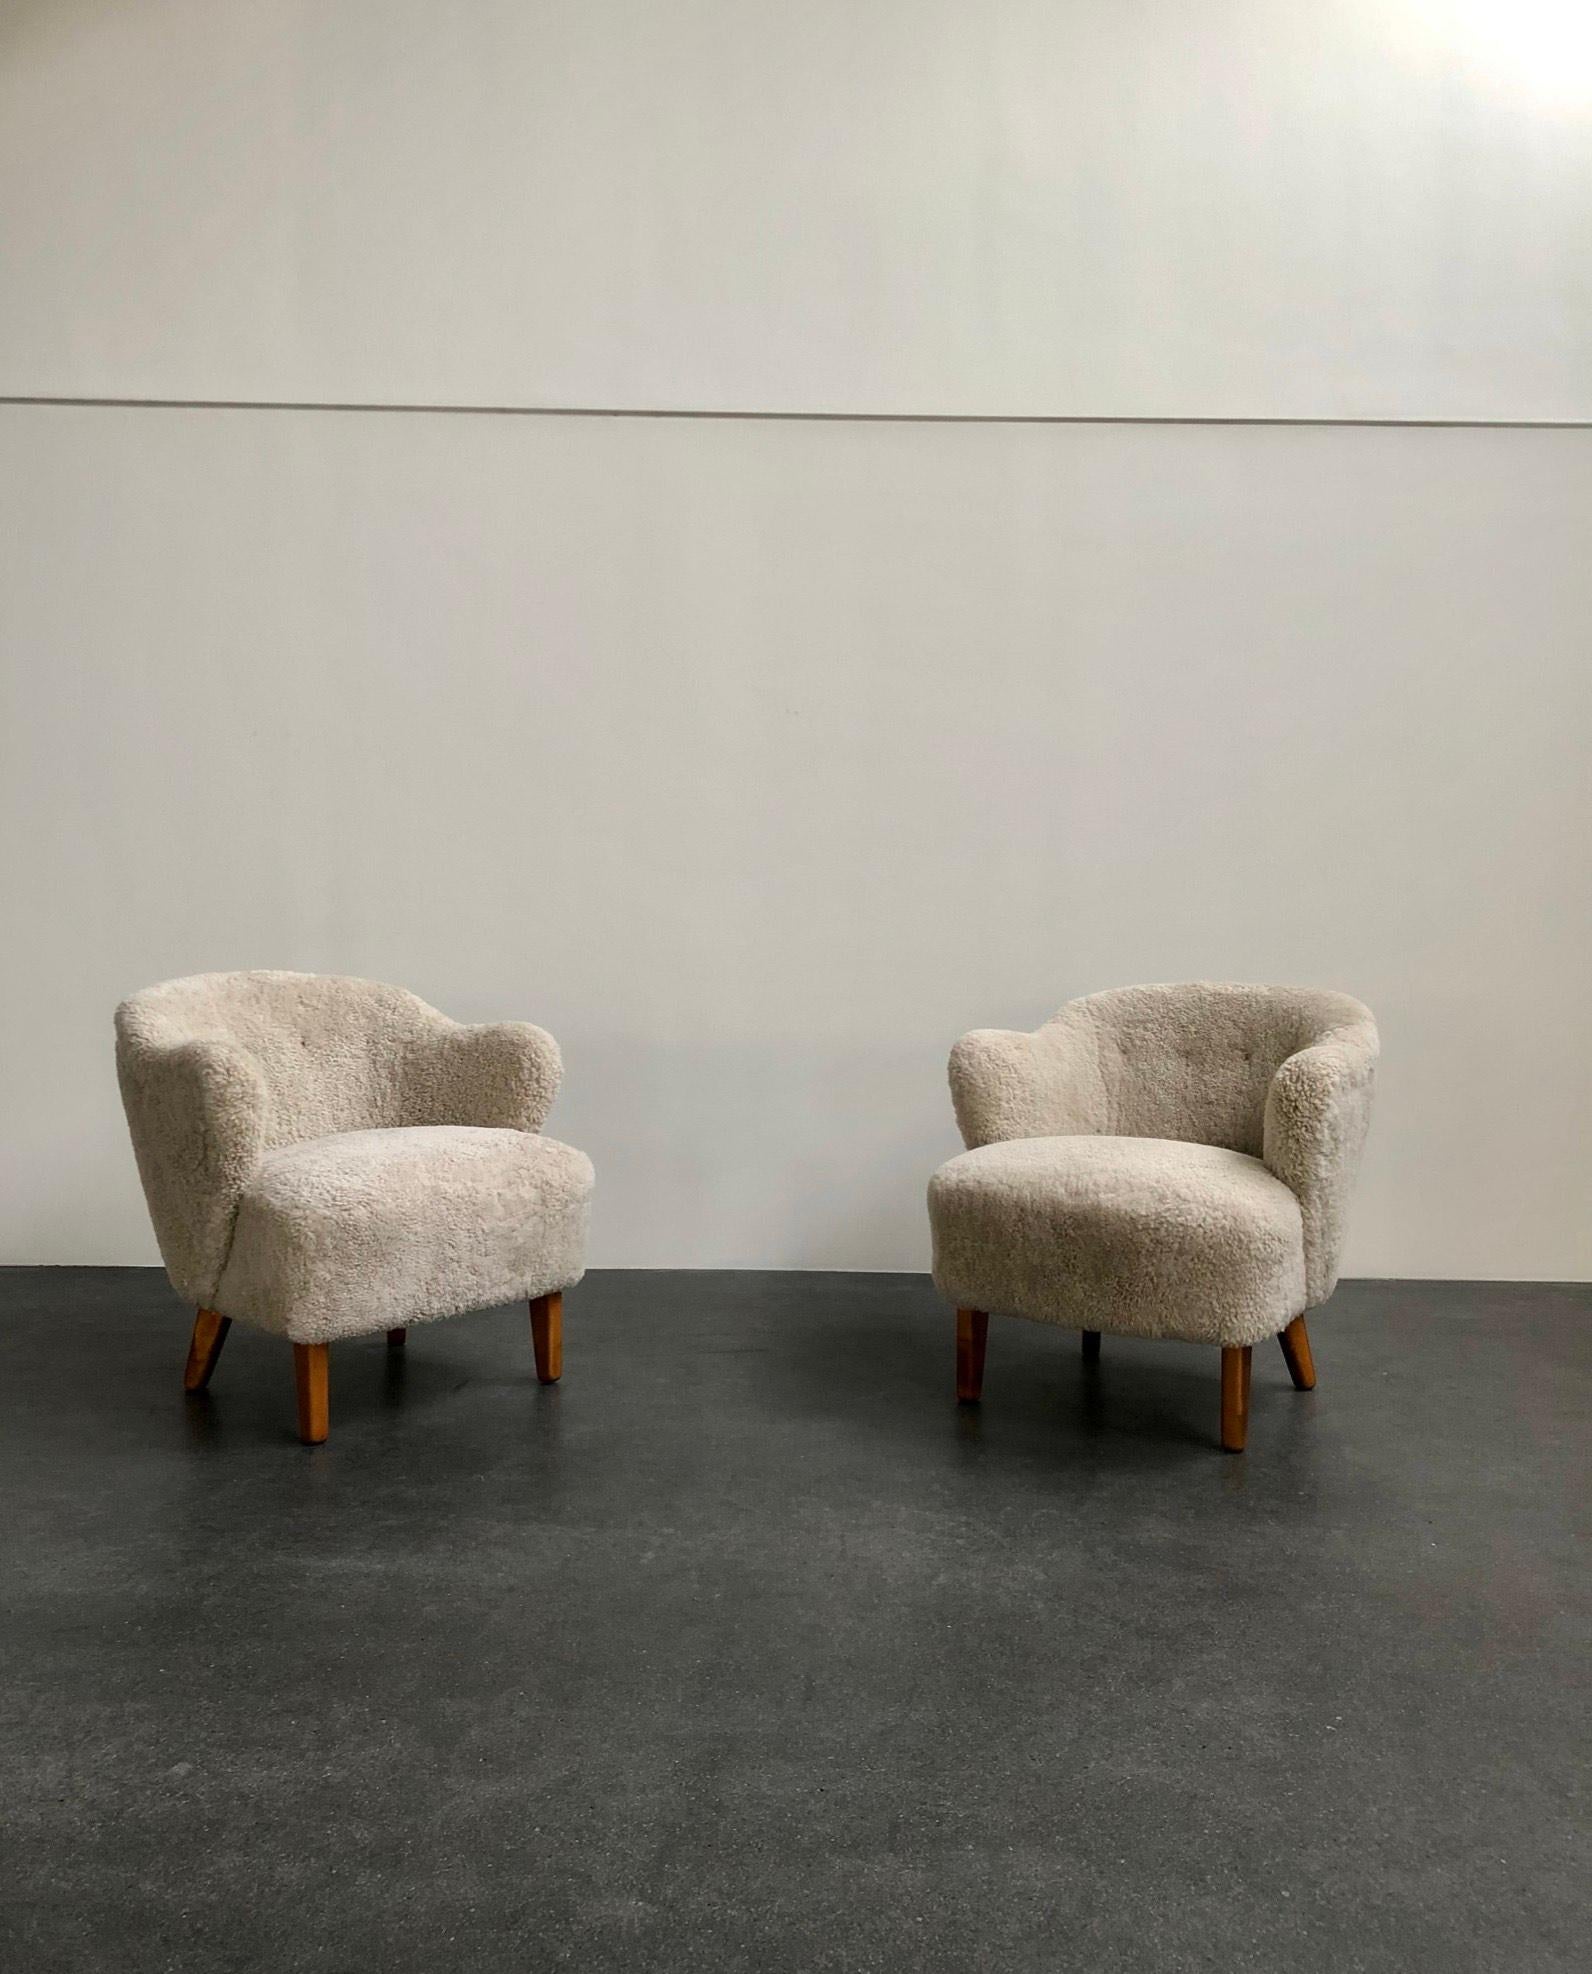 Flemming Lassen, paire de fauteuils pour le maître ébéniste Jacob Kjaer, Danemark. Pieds fuselés en frêne teinté et rembourrés en peau de mouton beige.

Le modèle a été présenté à l'exposition de la Guild des ébénistes de Copenhague en 1940.

Le